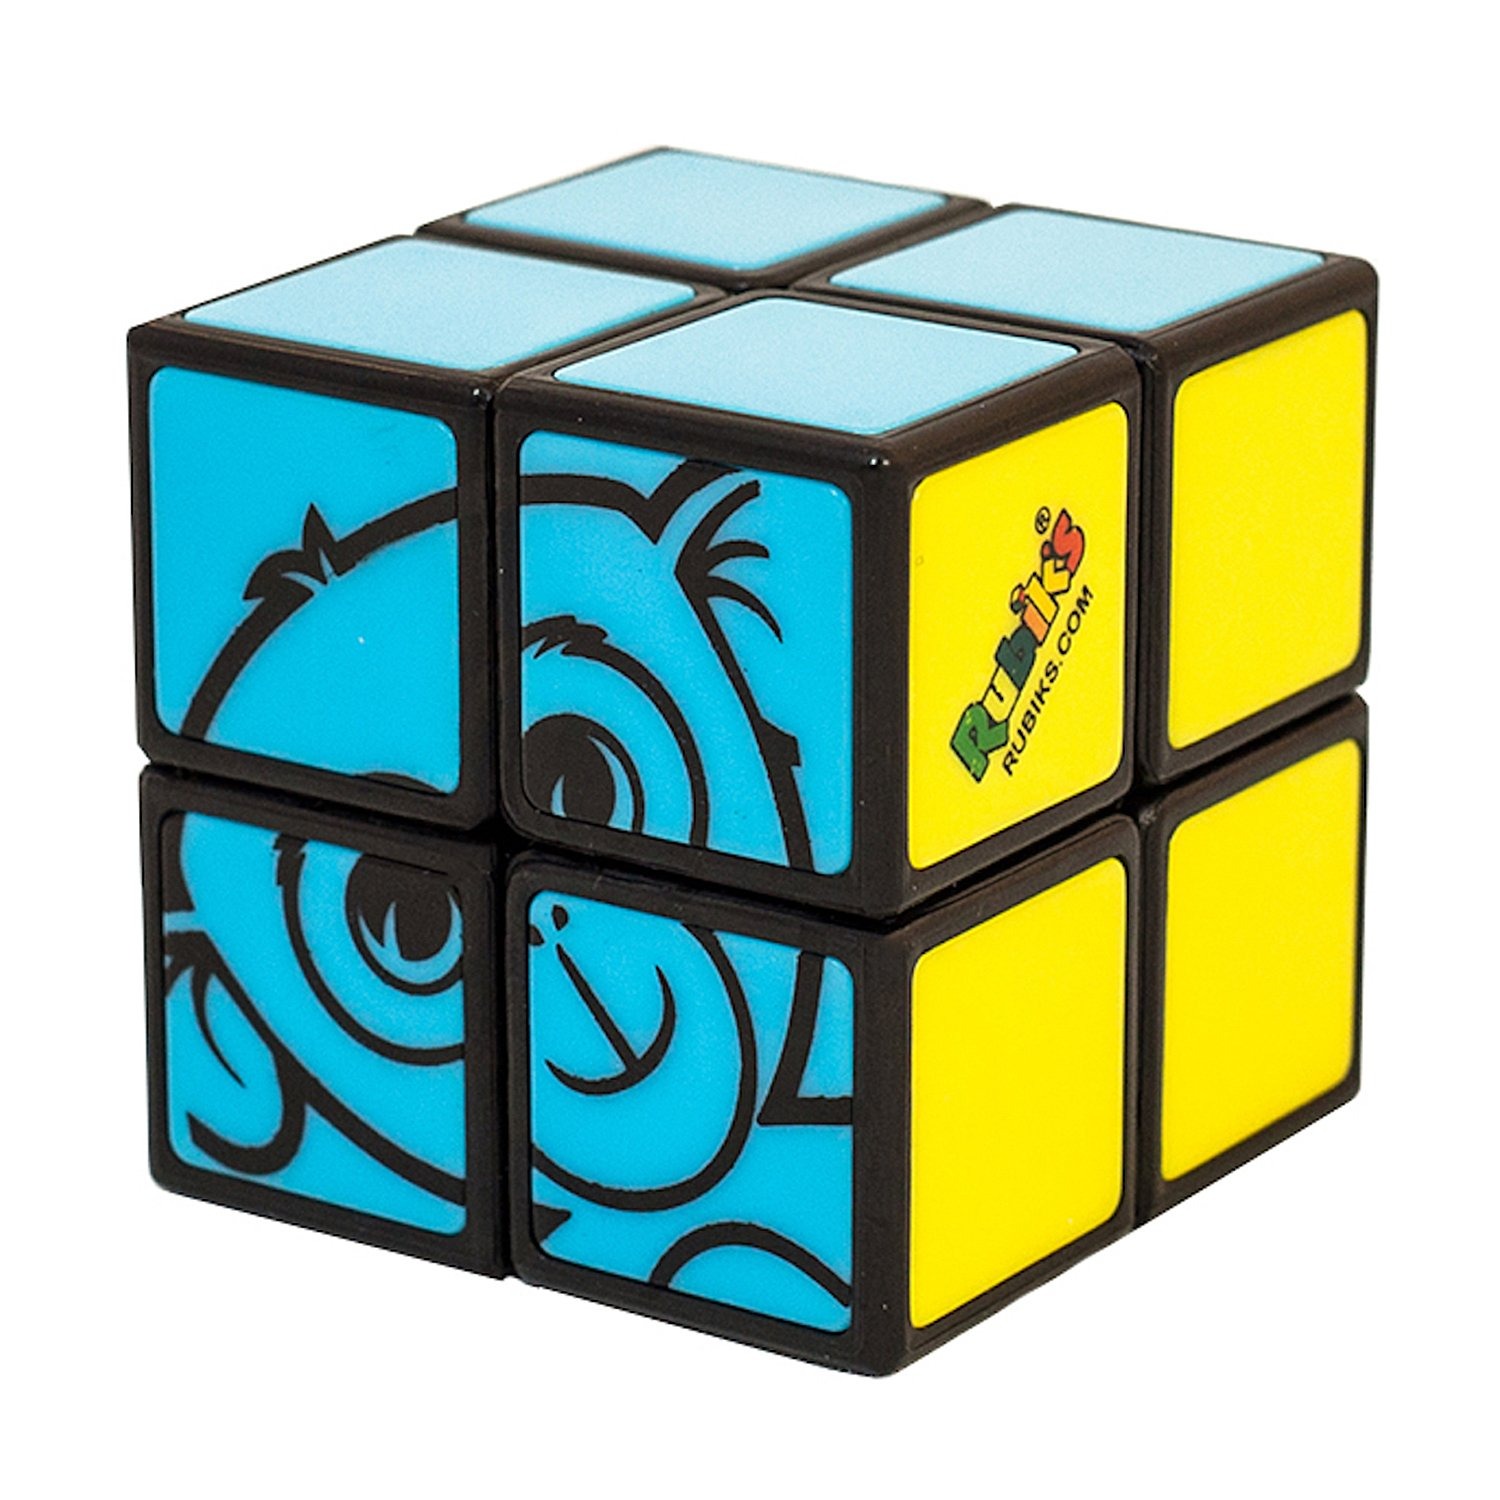 Купить Головоломка РУБИКС КР5017 Кубик рубика 2х2 для детей, Rubik's,